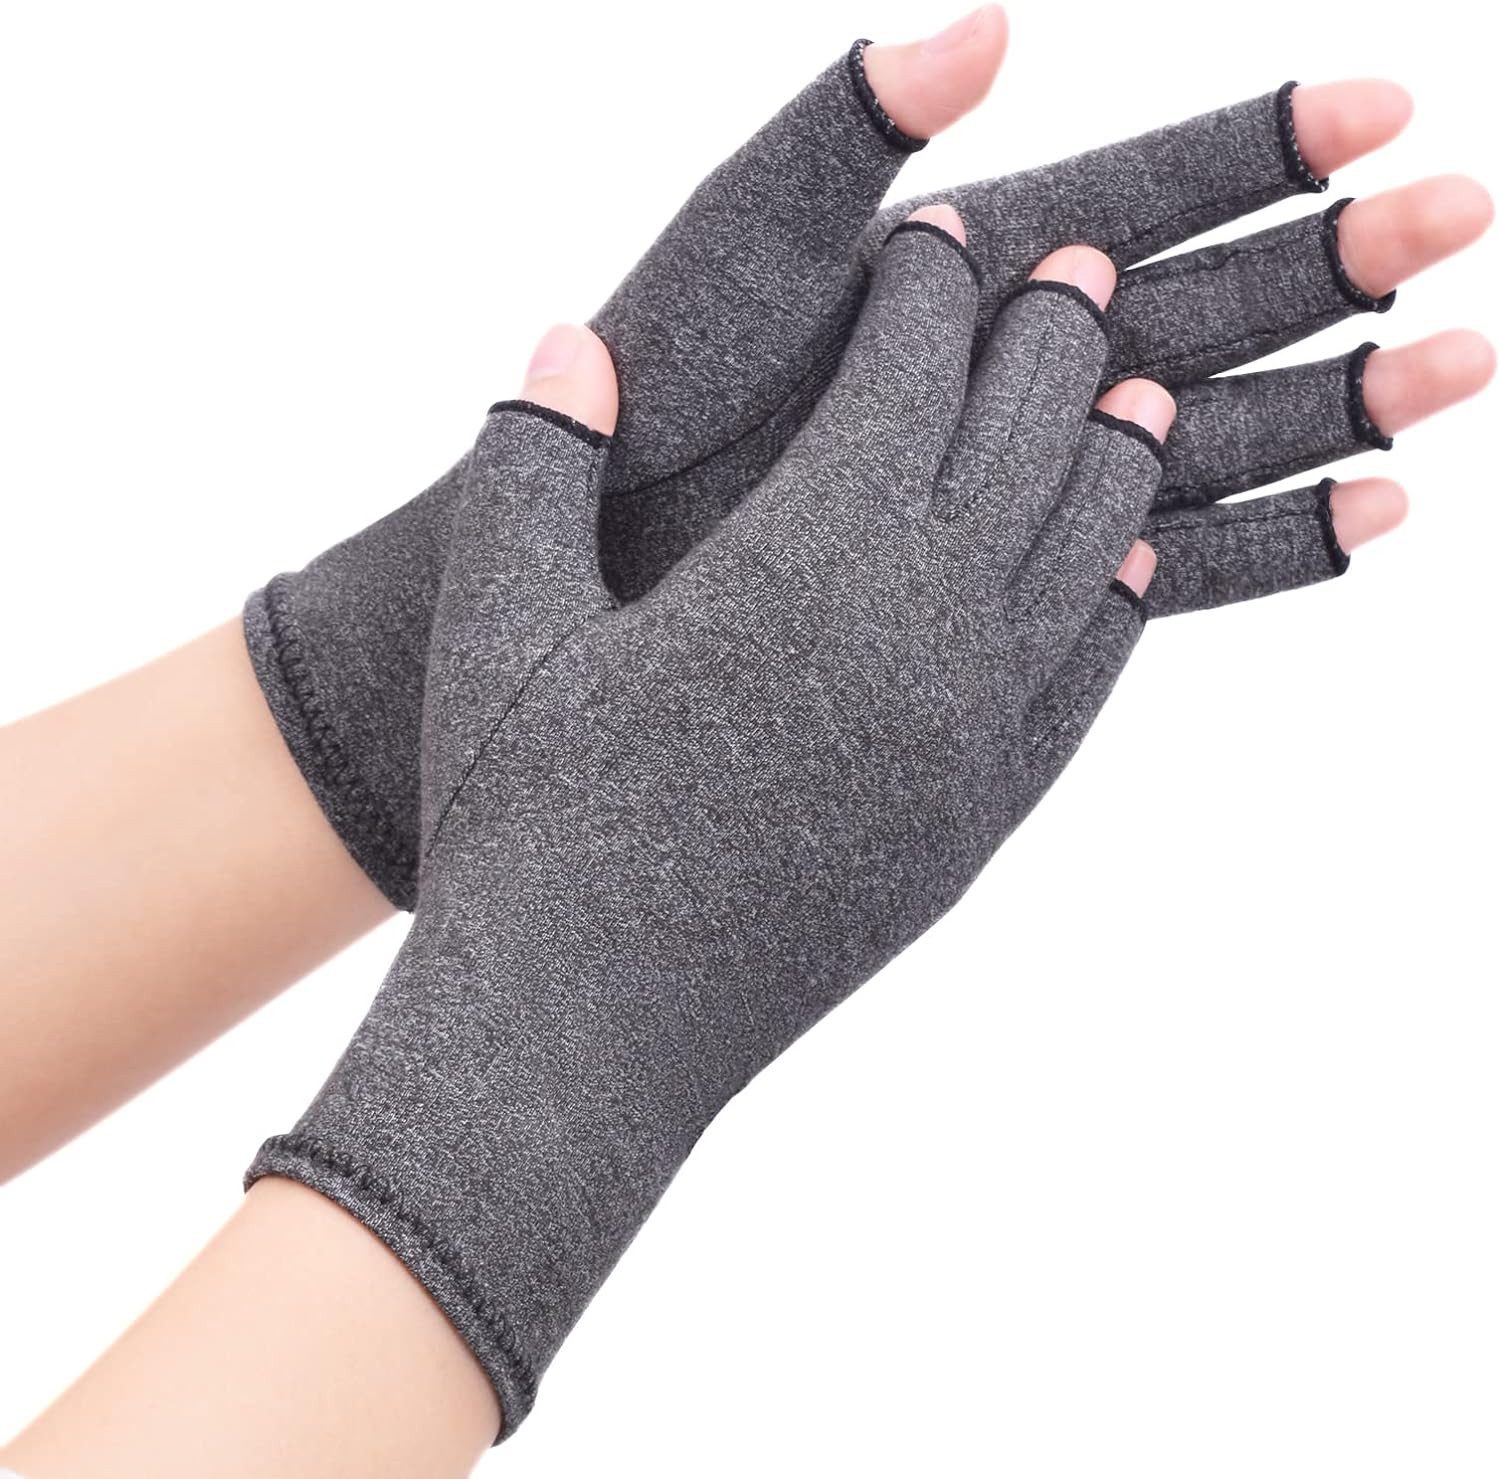 Powerwill Trainingshandschuhe Arthritis Handschuhe Kompressionhandschuhe für Frauen und Männer Förderung der Heilung, Linderung von Schmerzen